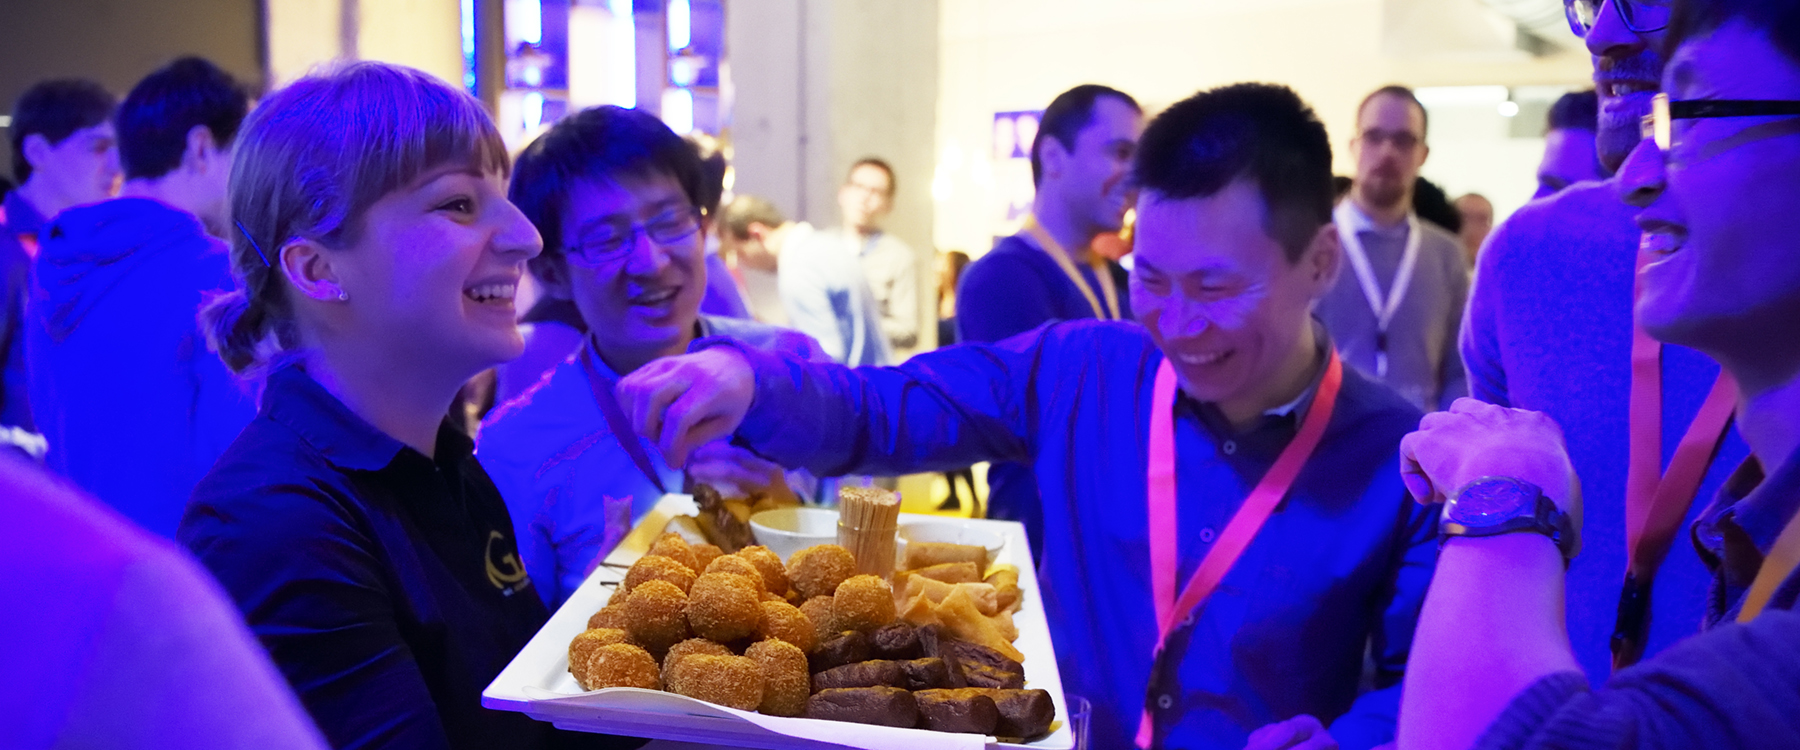 Chinese afgestudeerde studenten aan de bitterballen, tijdens een event van het Nederlandse ict-bedrijf ASML om kandidaten te interesseren voor een baan. | Foto: Bart van Overbeeke | Hollands Hoogte, 2017 